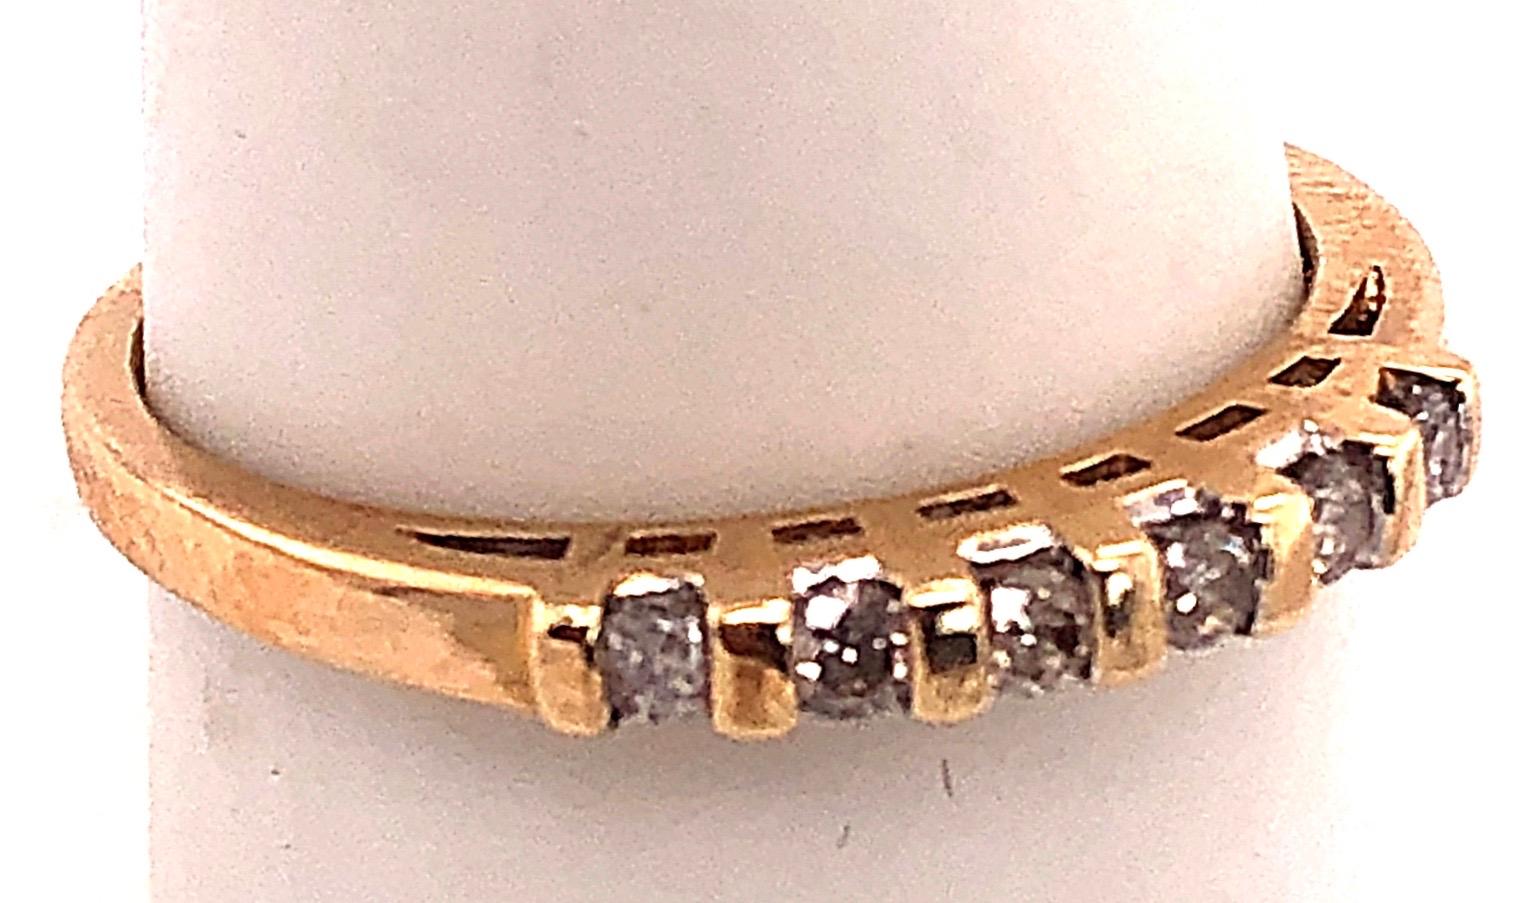 14 Karat Gelbgold Diamant Band Braut Hochzeit Jahrestag Ring Größe 7,75.
0.30 Gesamtgewicht der Diamanten.
2 Gramm Gesamtgewicht.